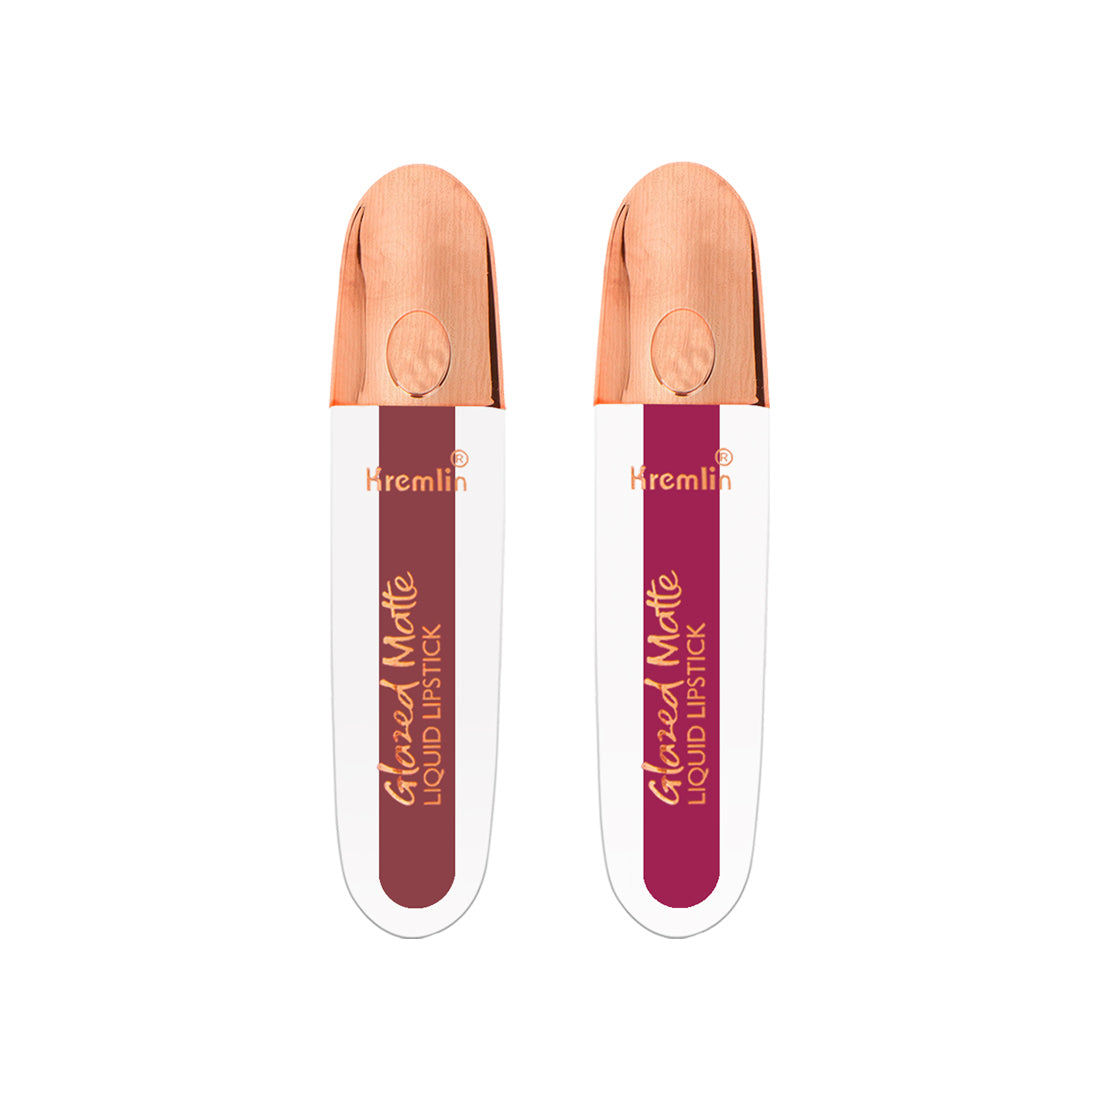 Kremlin Glazed Matte Liquid Lipstick Lips Pack of 2 (Virgin, Rosette)